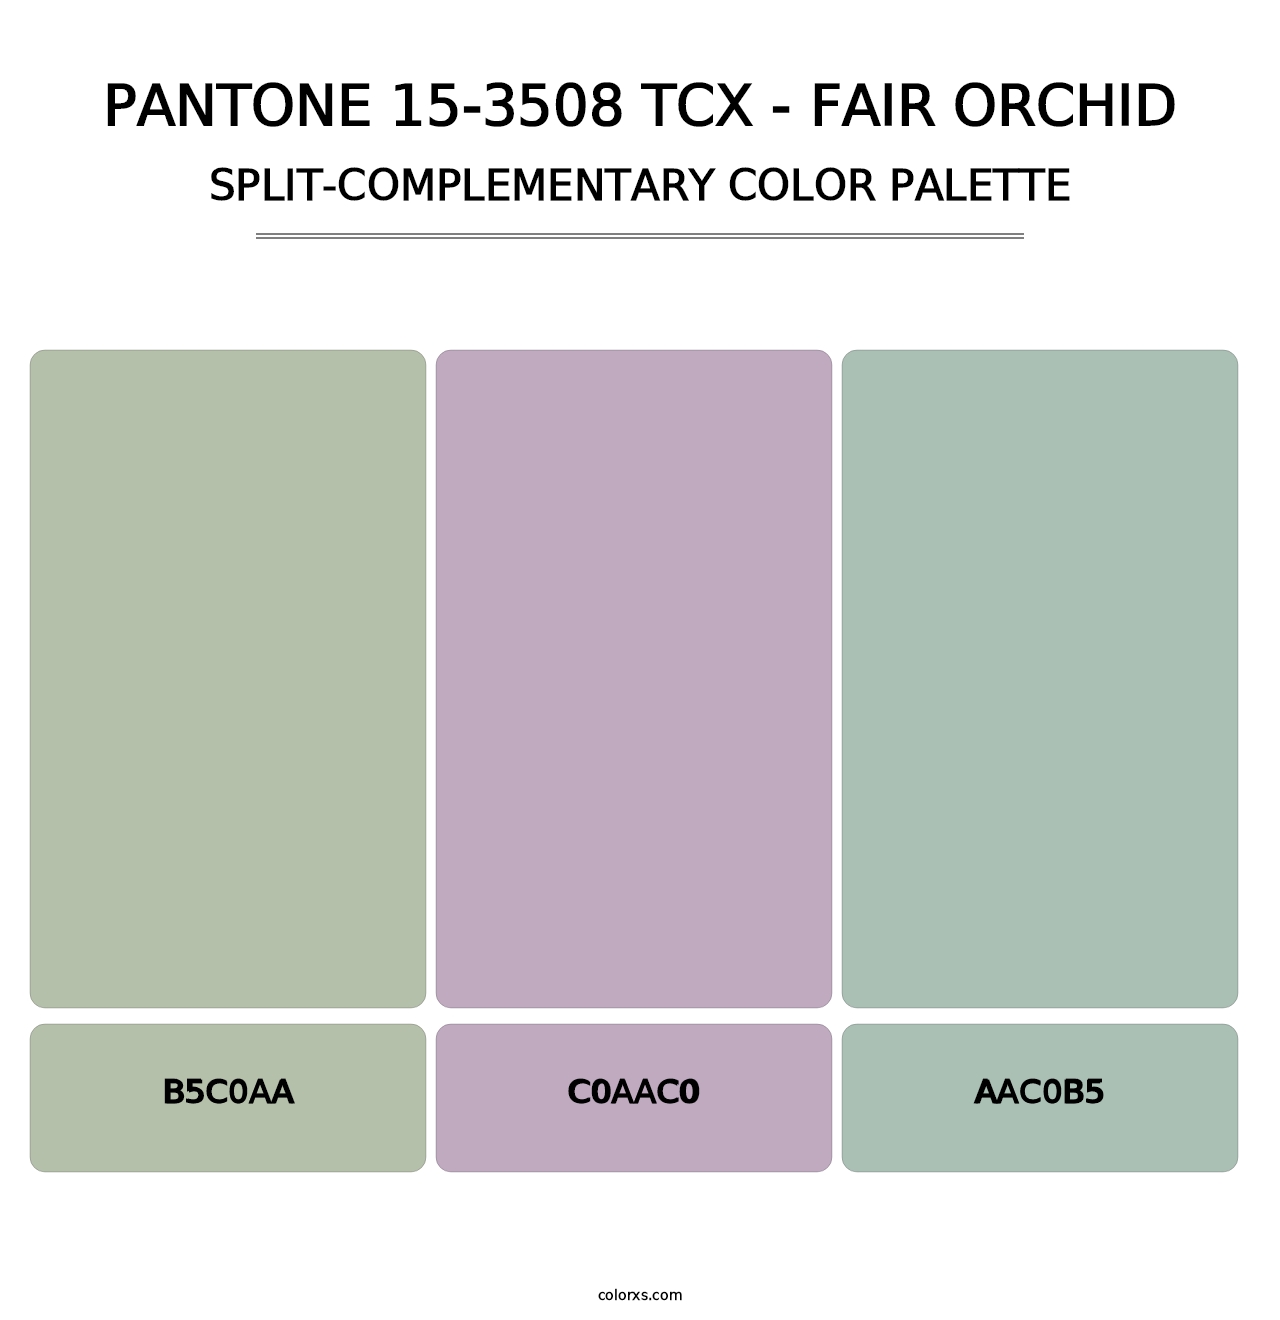 PANTONE 15-3508 TCX - Fair Orchid - Split-Complementary Color Palette